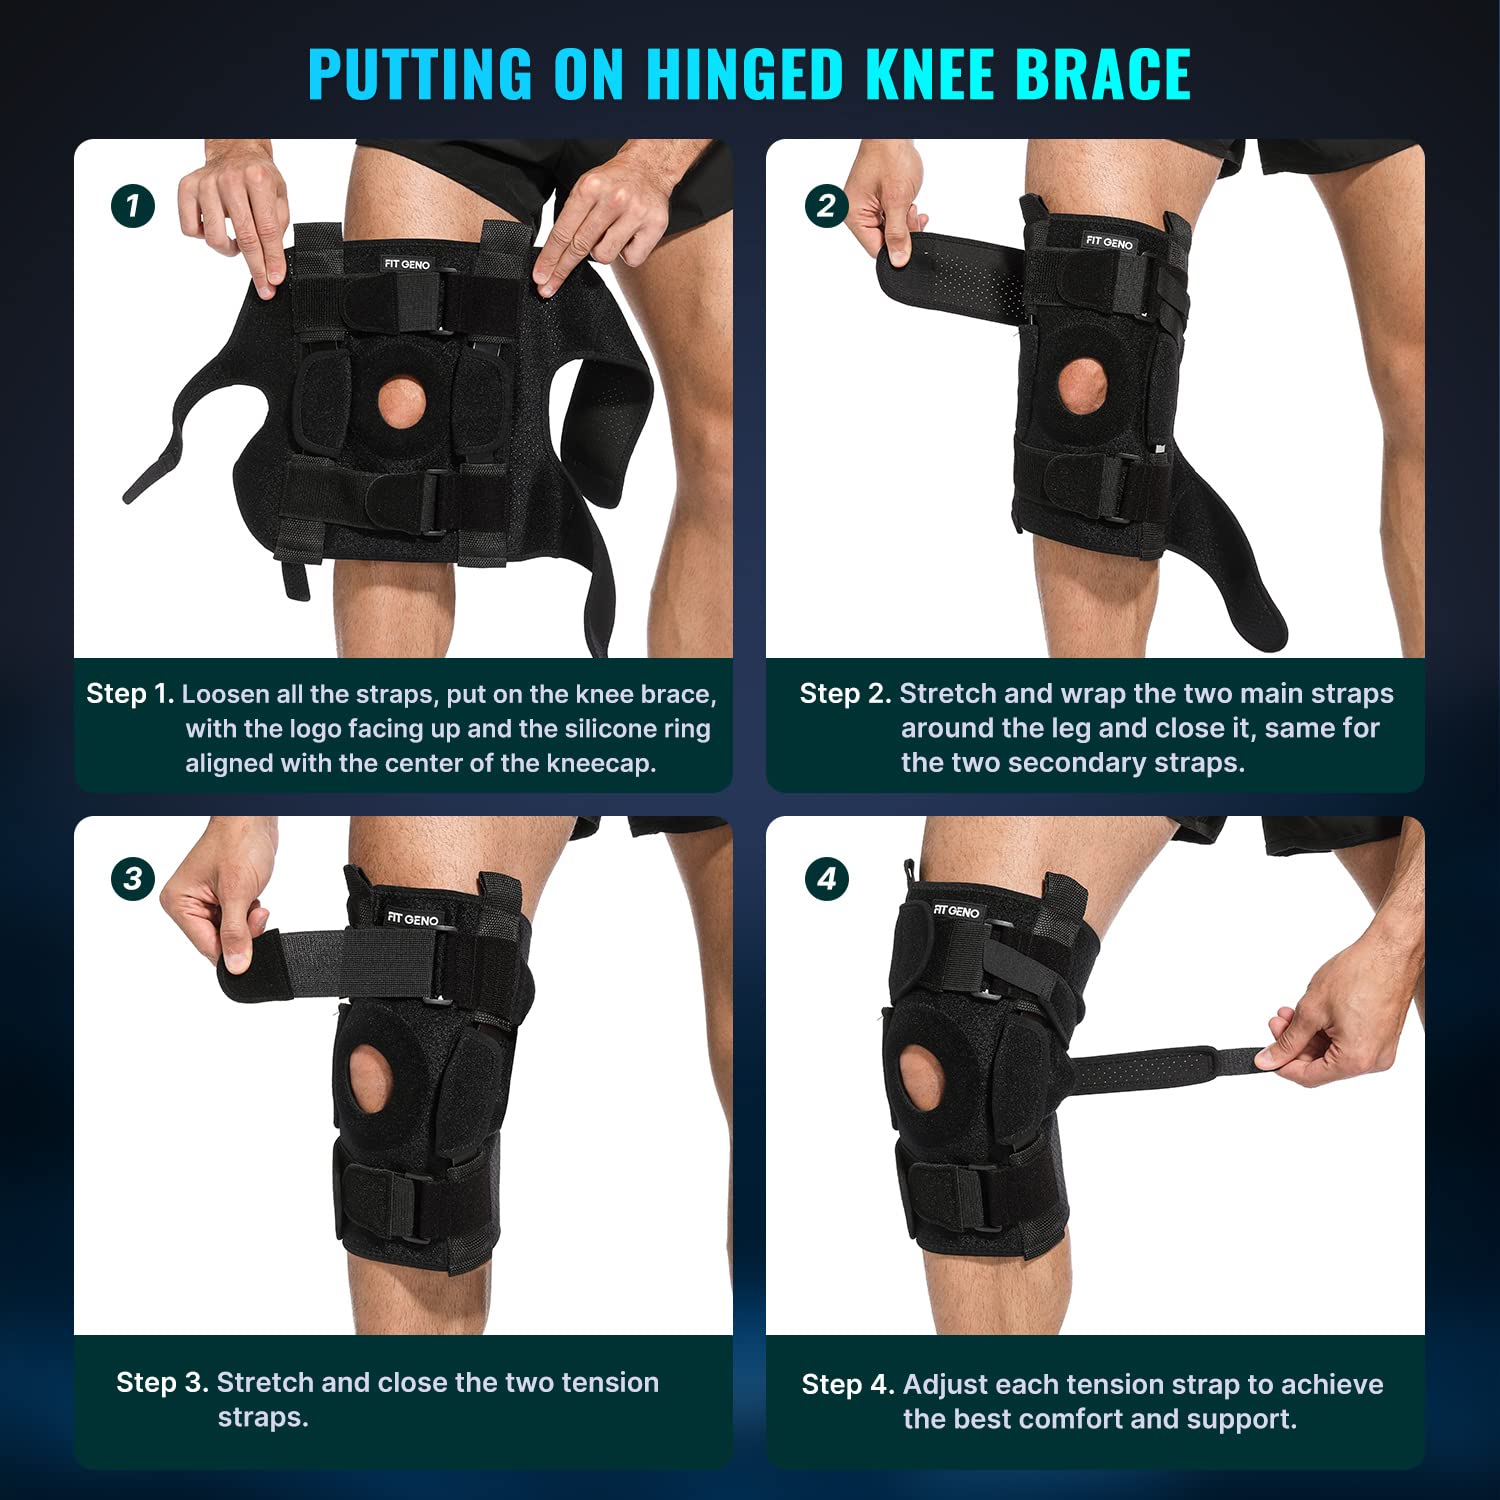 The Min-Knee Hinged Knee Brace